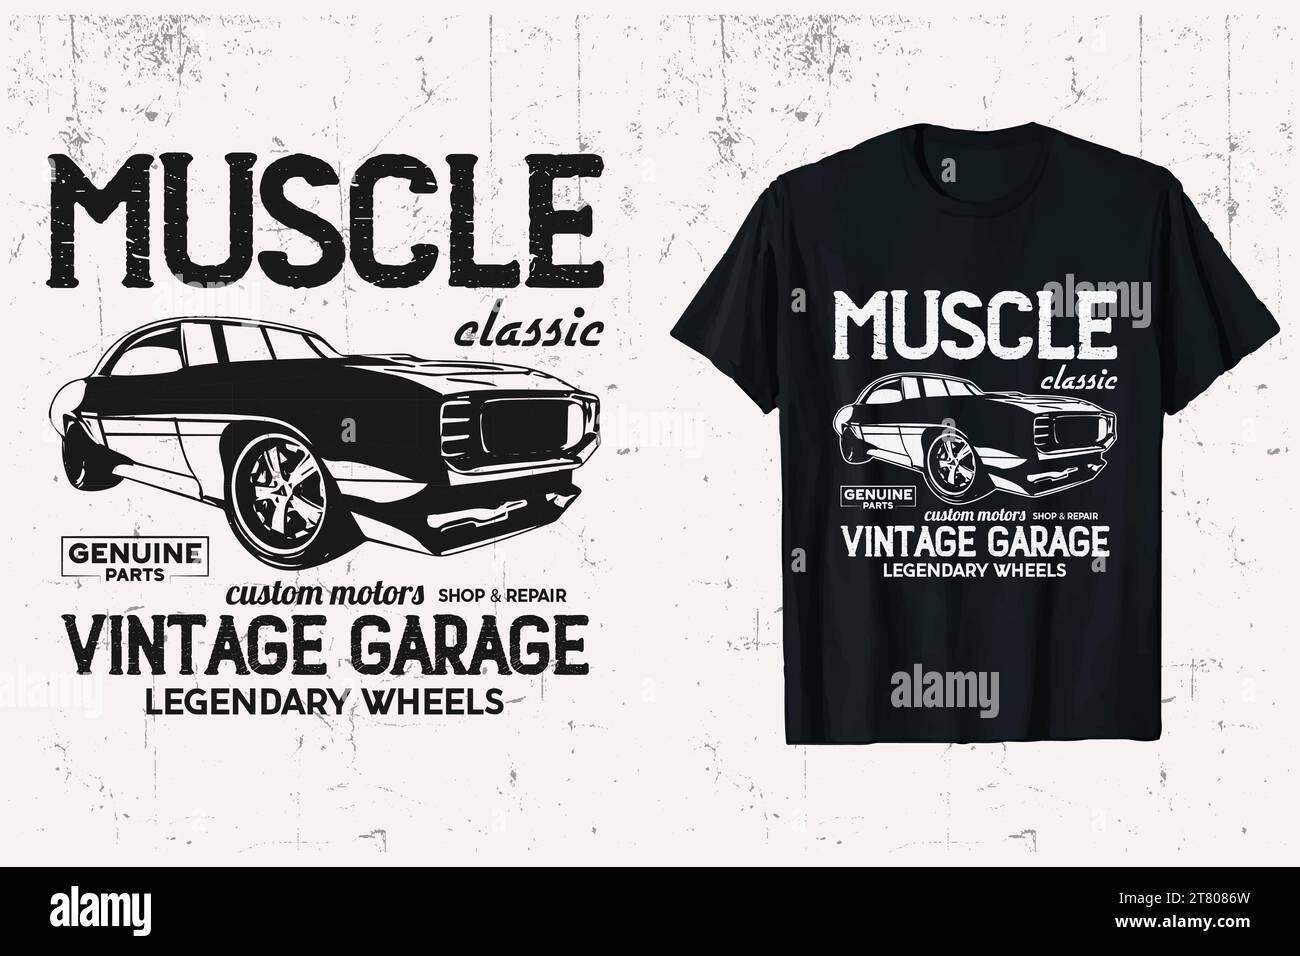 T-shirt Vector Muscle Classic Car vintage. T-shirt personalizzata con sfondo bianco e nero del veicolo Muscle Cars. Illustrazione Vettoriale